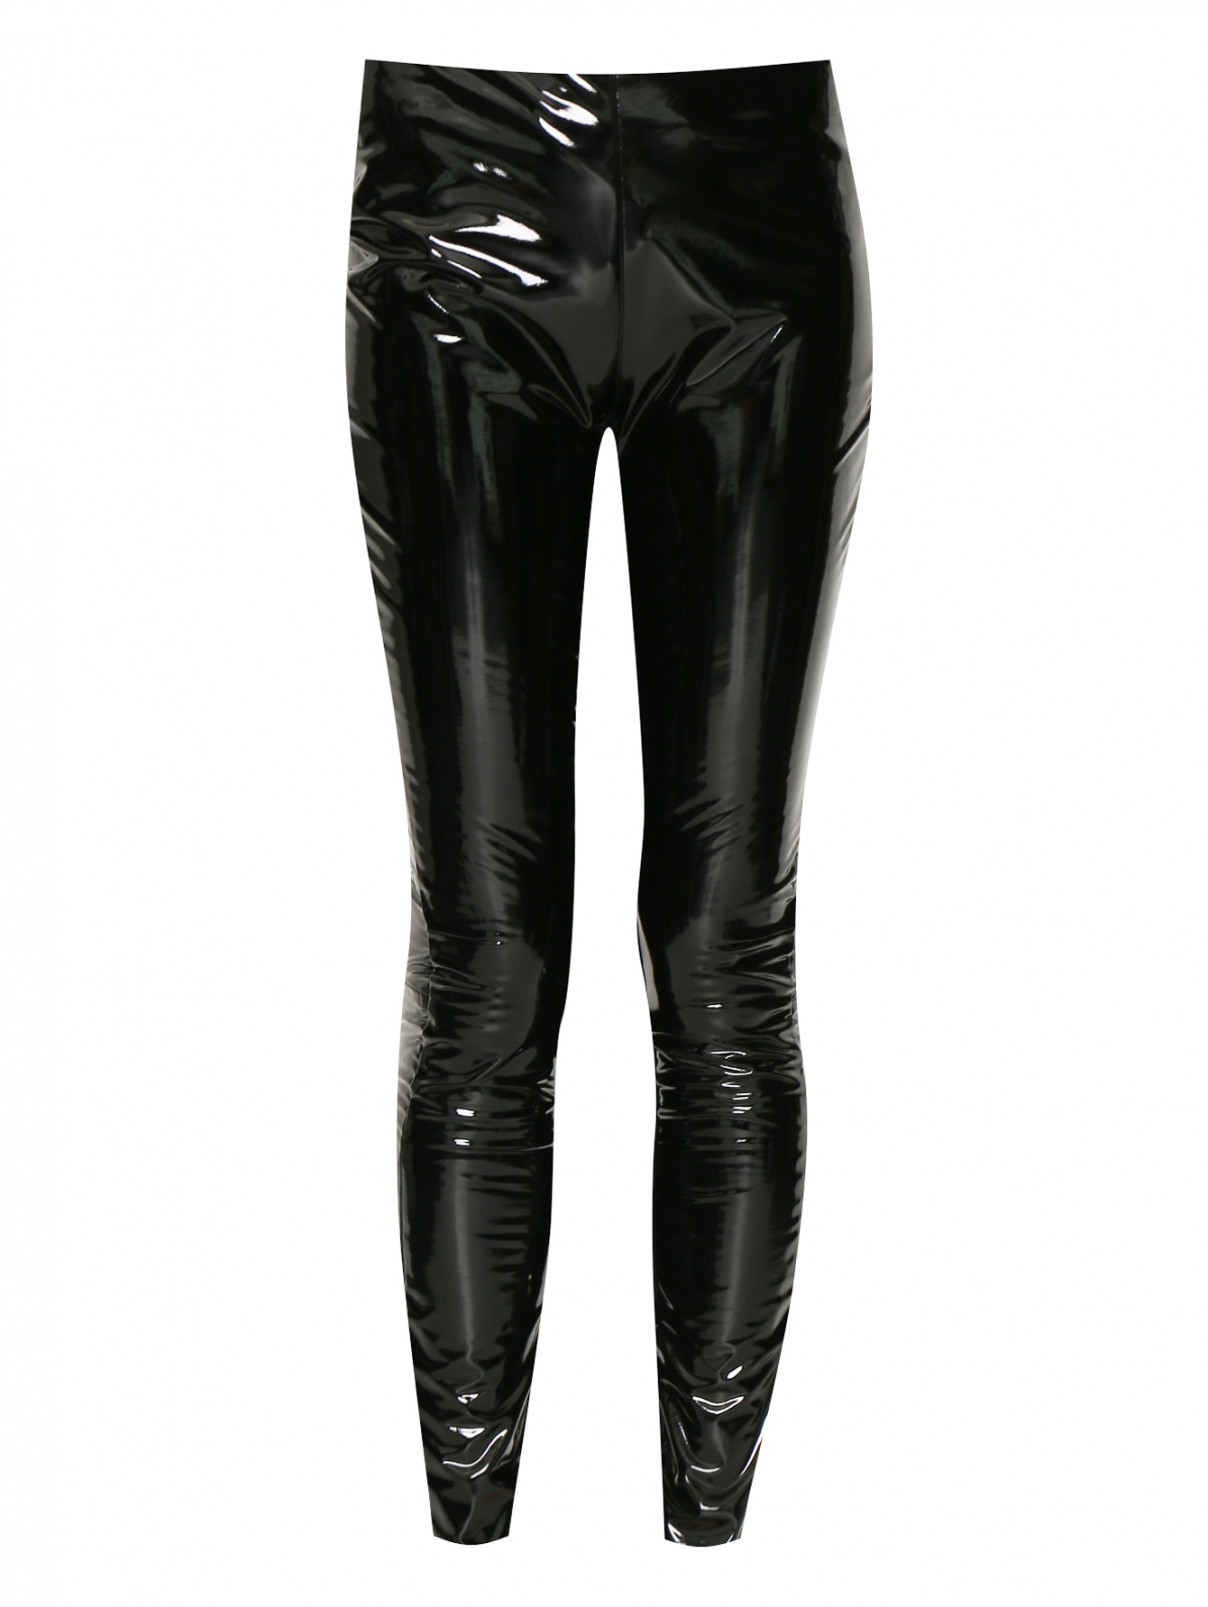 Узкие брюки из винила Karl Lagerfeld  –  Общий вид  – Цвет:  Черный